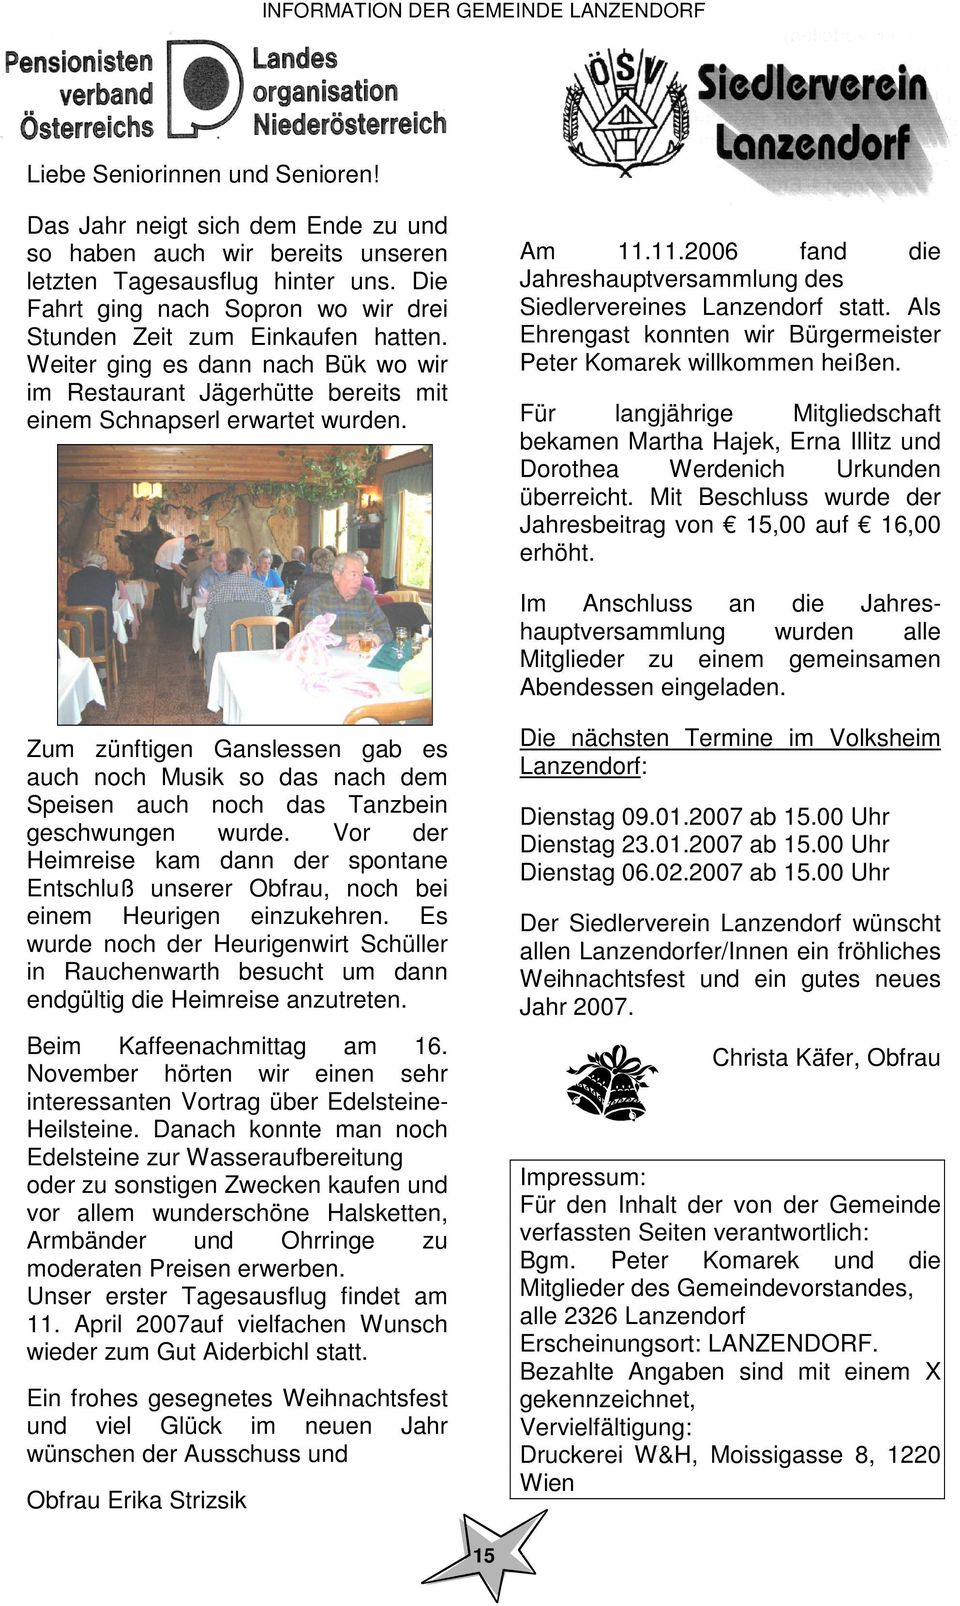 11.2006 fand die Jahreshauptversammlung des Siedlervereines Lanzendorf statt. Als Ehrengast konnten wir Bürgermeister Peter Komarek willkommen heißen.